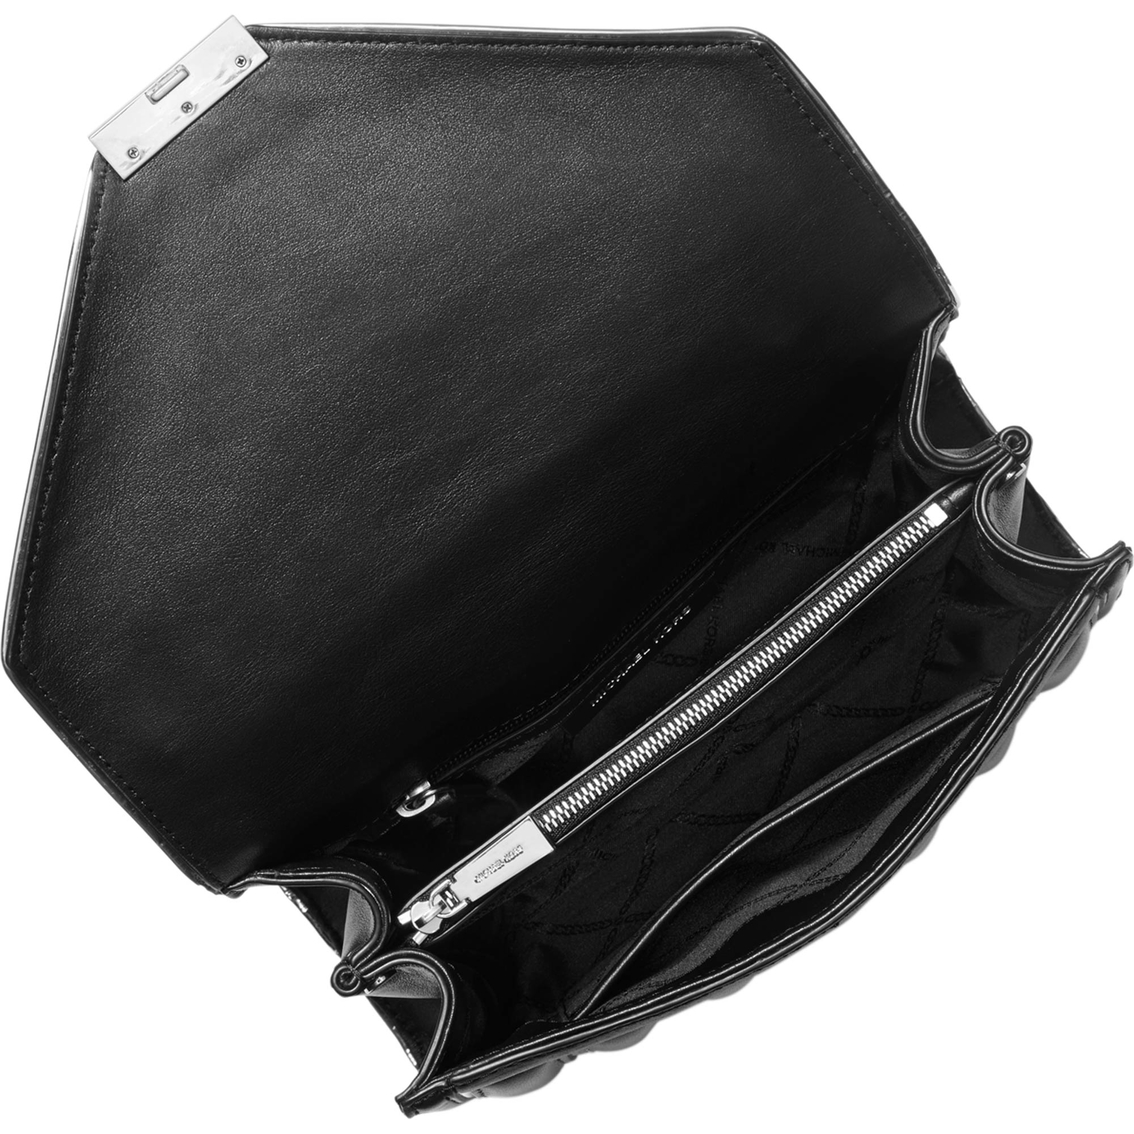 Michael Kors Whitney Shoulder Bag, Large | Shoulder Bags | Clothing ...